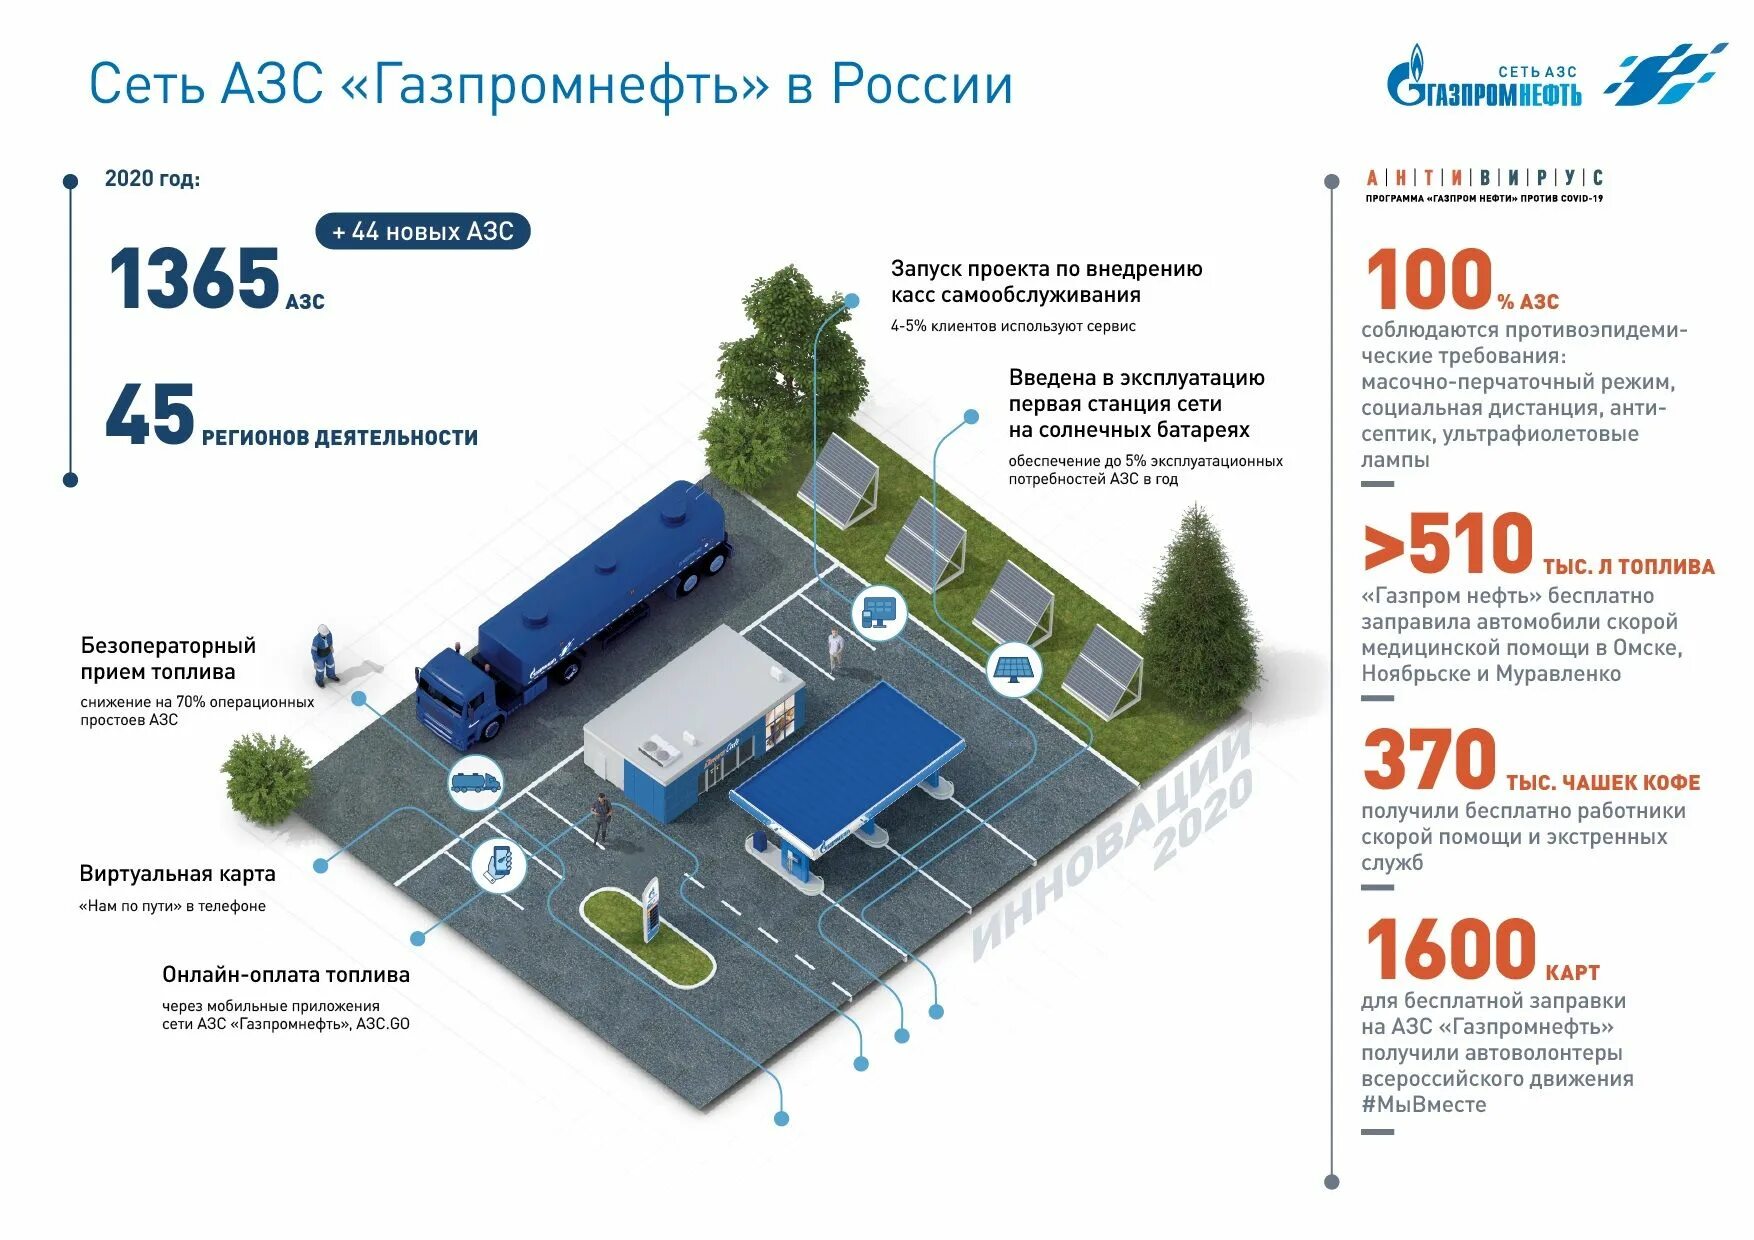 Сколько заправок в россии. Заправочная станция Газпромнефть. Схема размещение автозаправочной станции Газпромнефть.